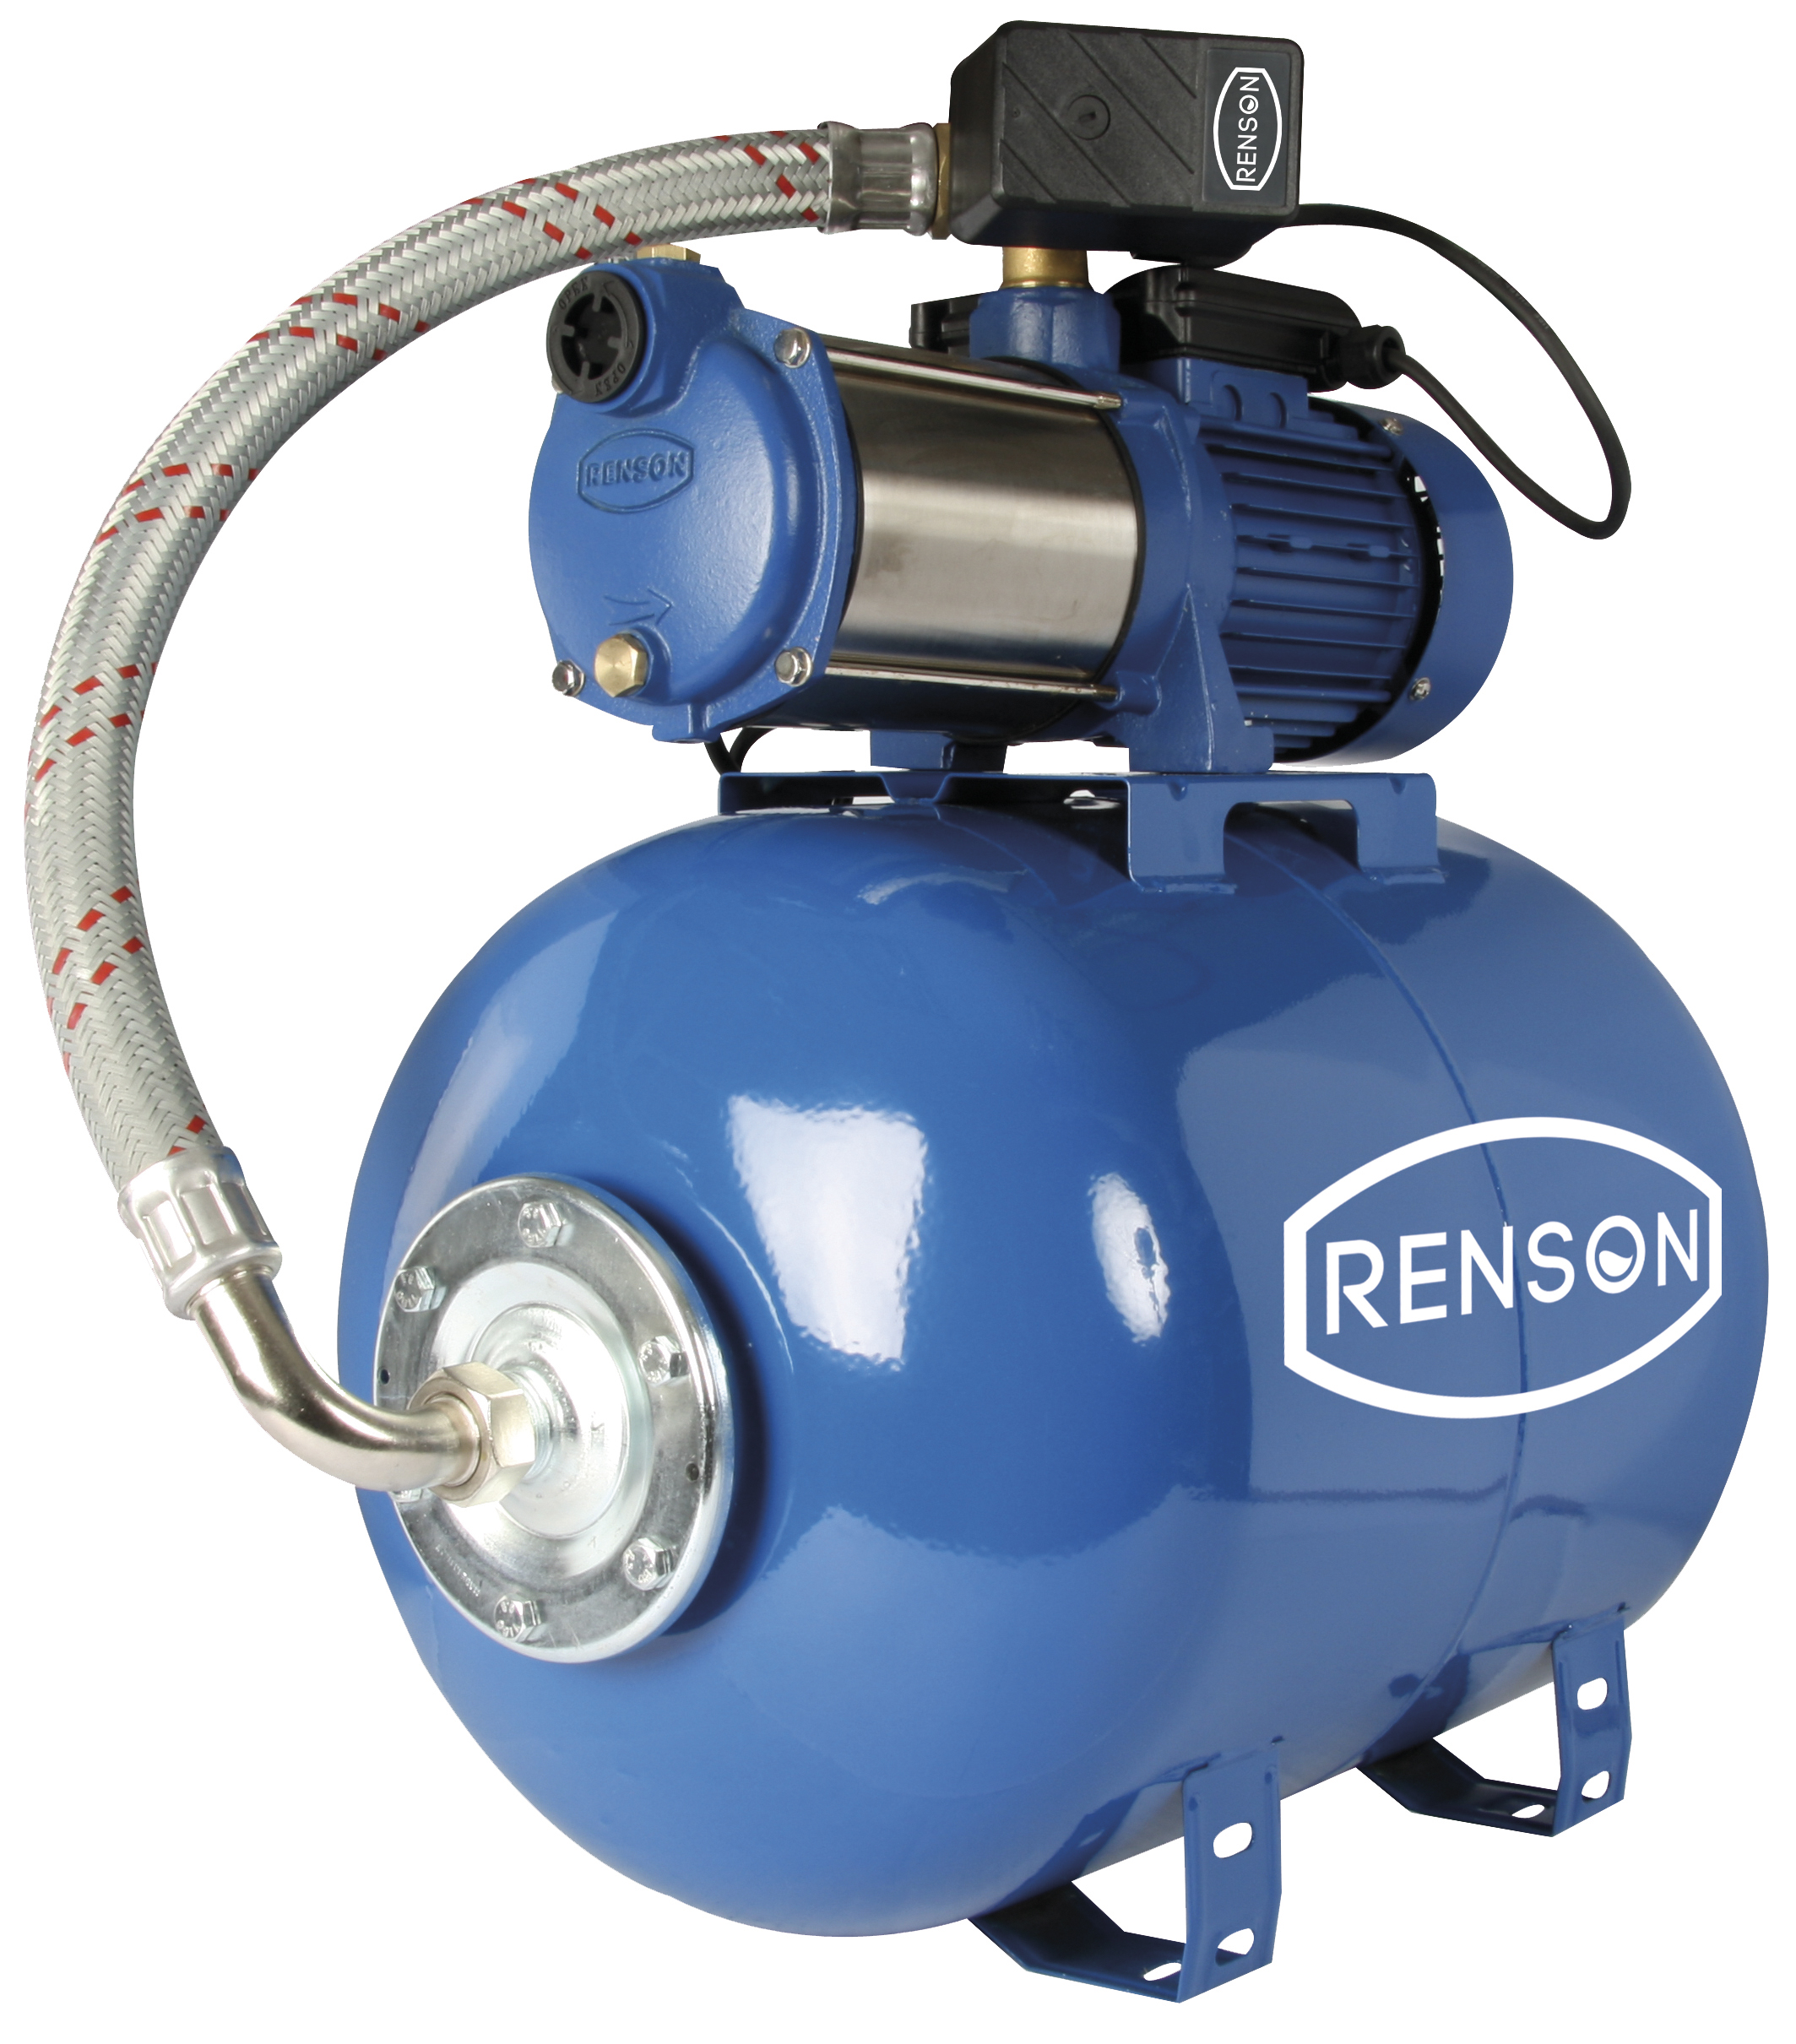 Surpresseur d'eau 80 litres Renson 103460, Profitez des Promos en